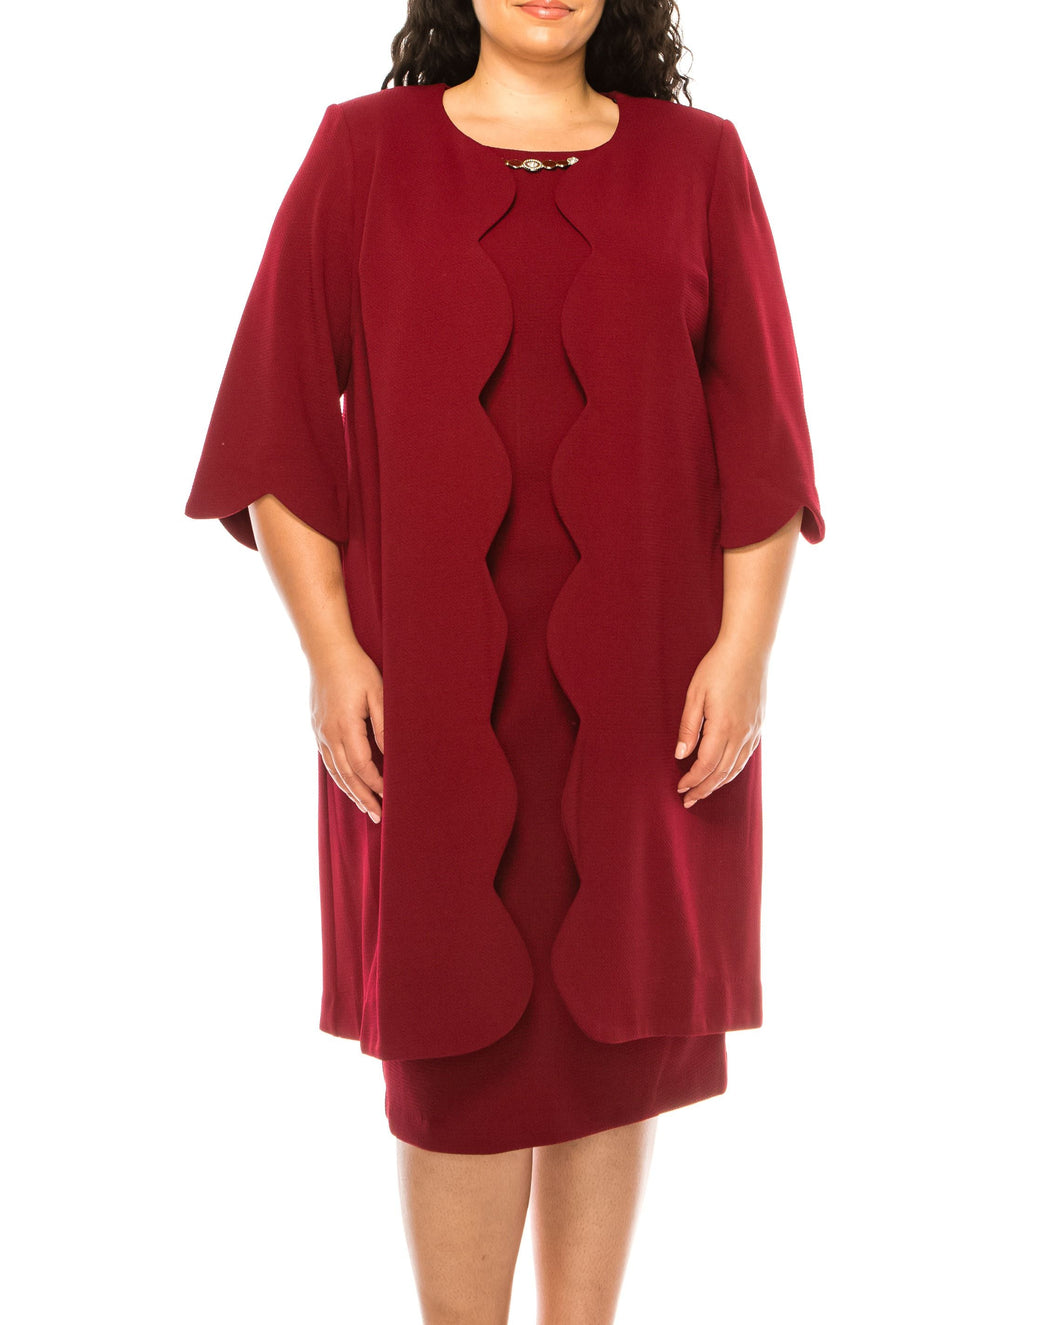 Maya Brooke 2PC Cranberry Jacket Dress Sizes 10 & 16 Remaining!